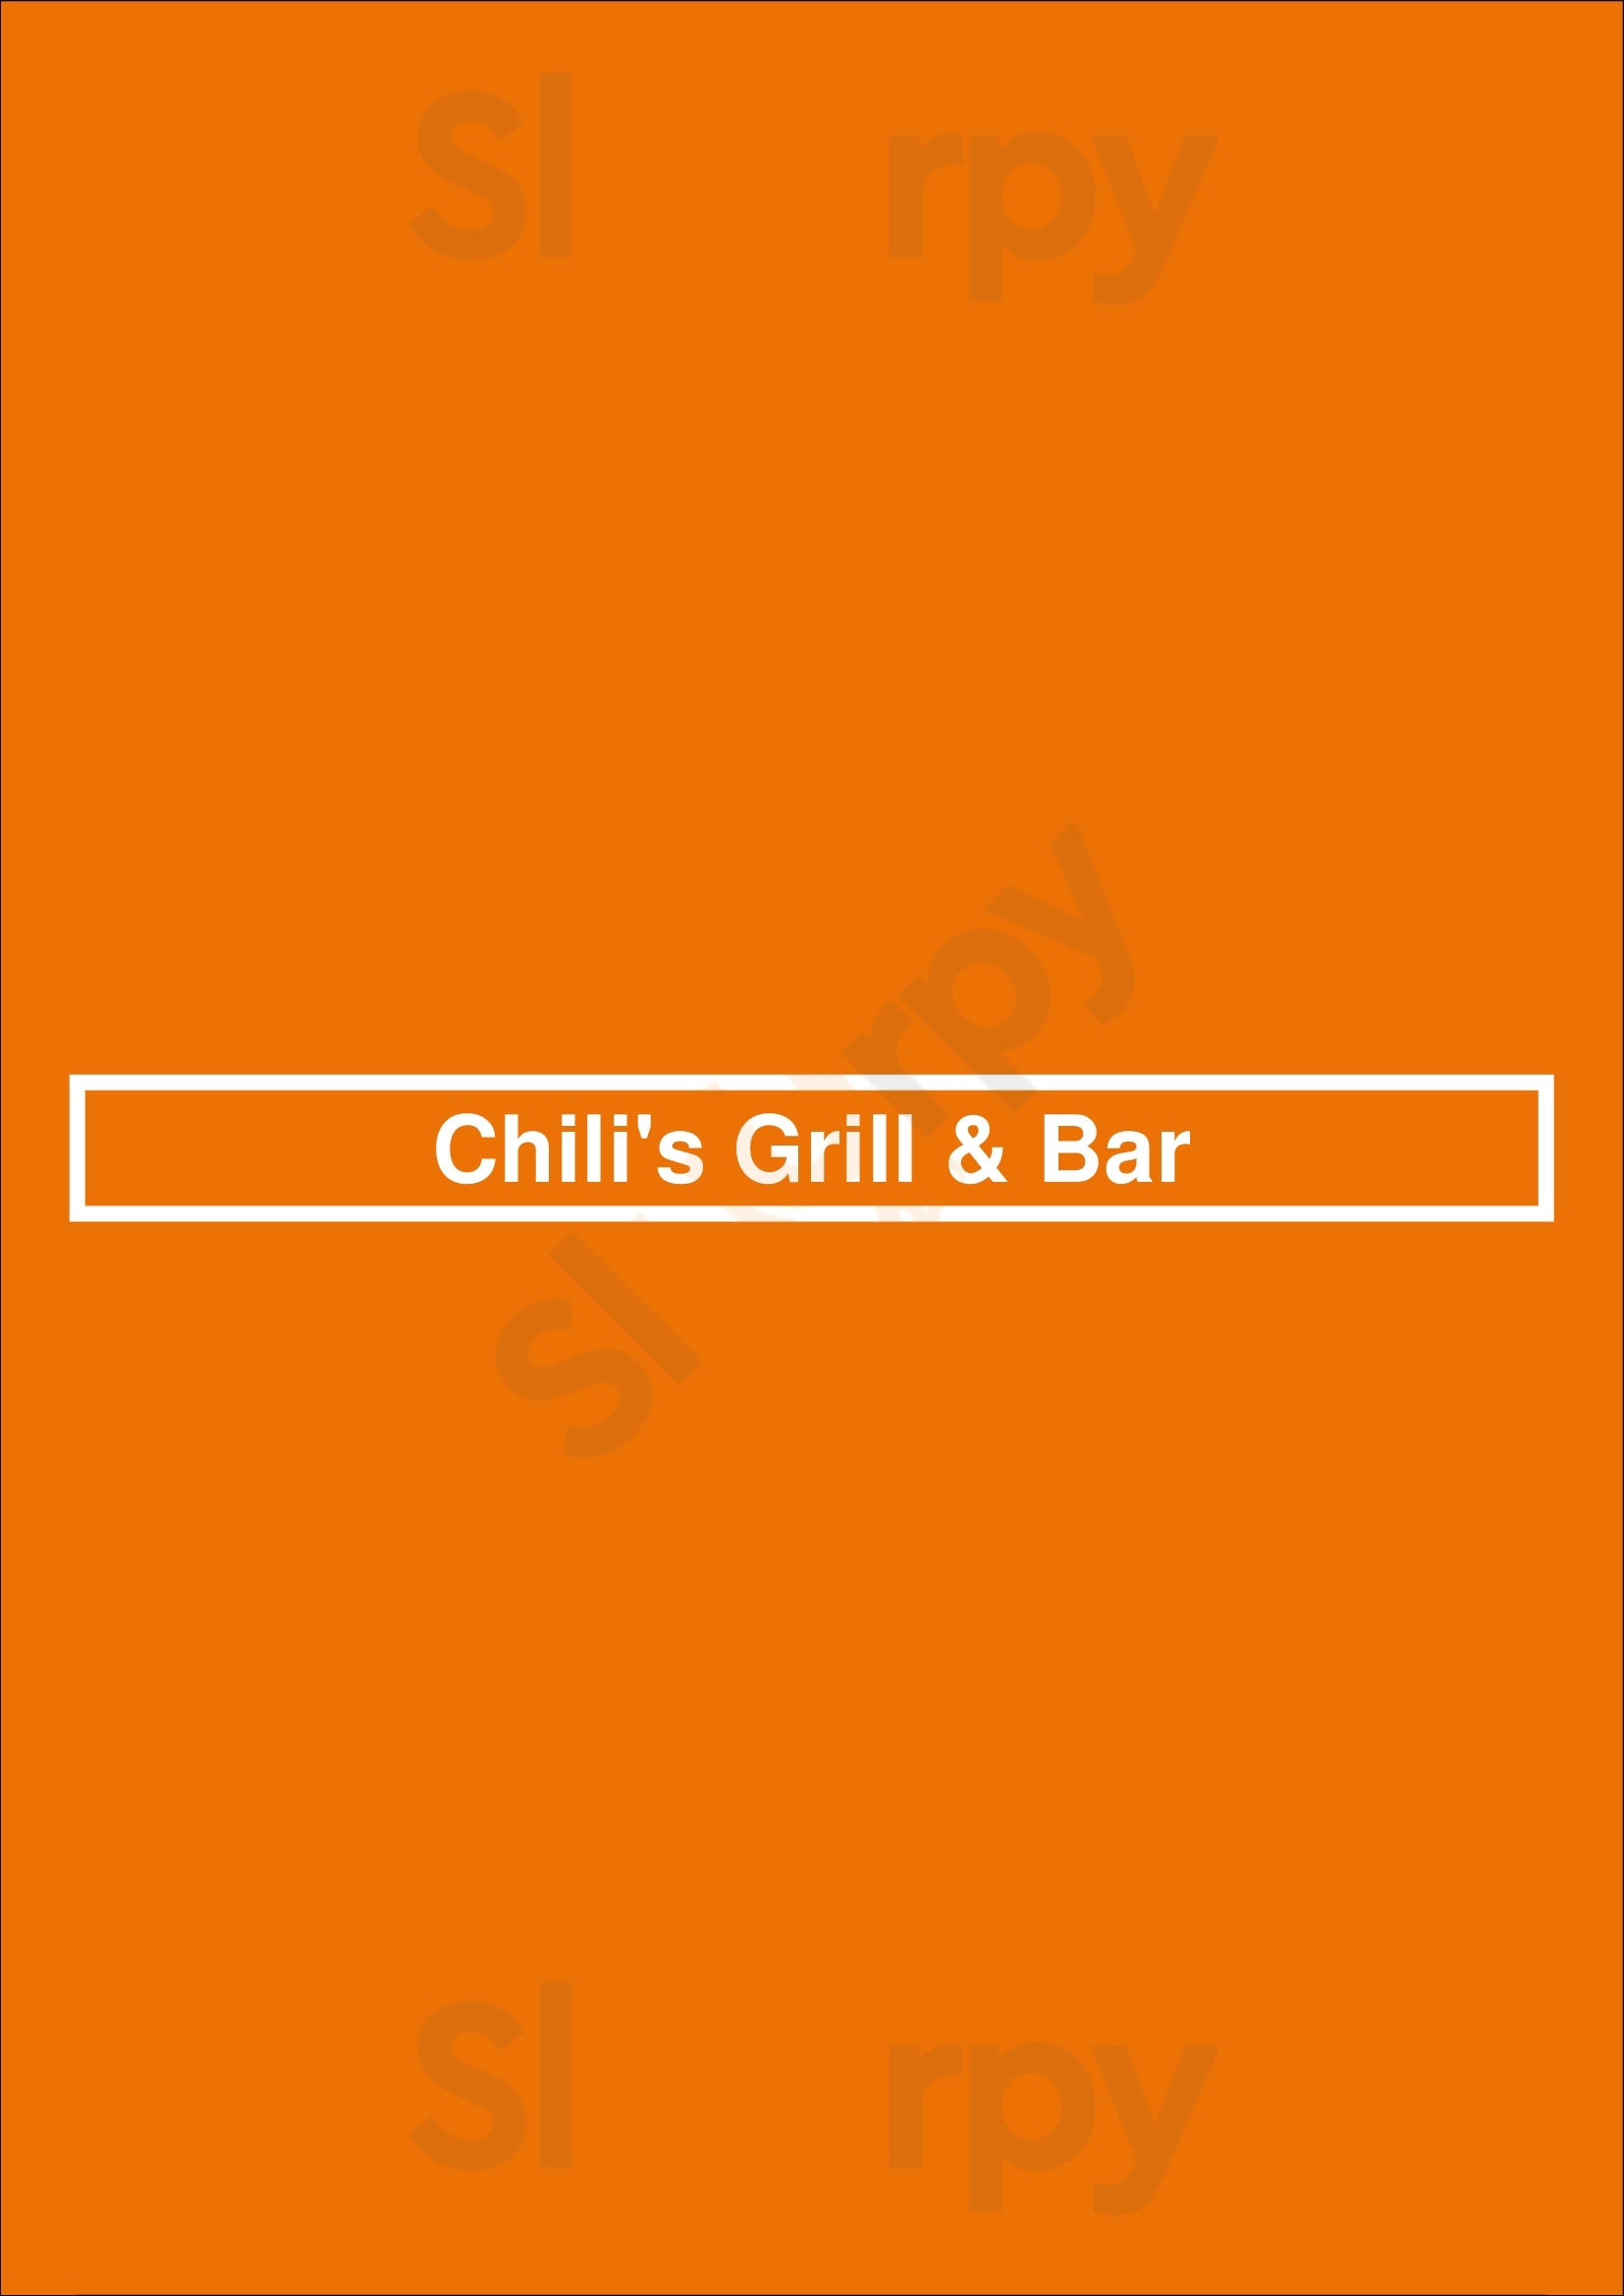 Chili's Grill & Bar Albuquerque Menu - 1